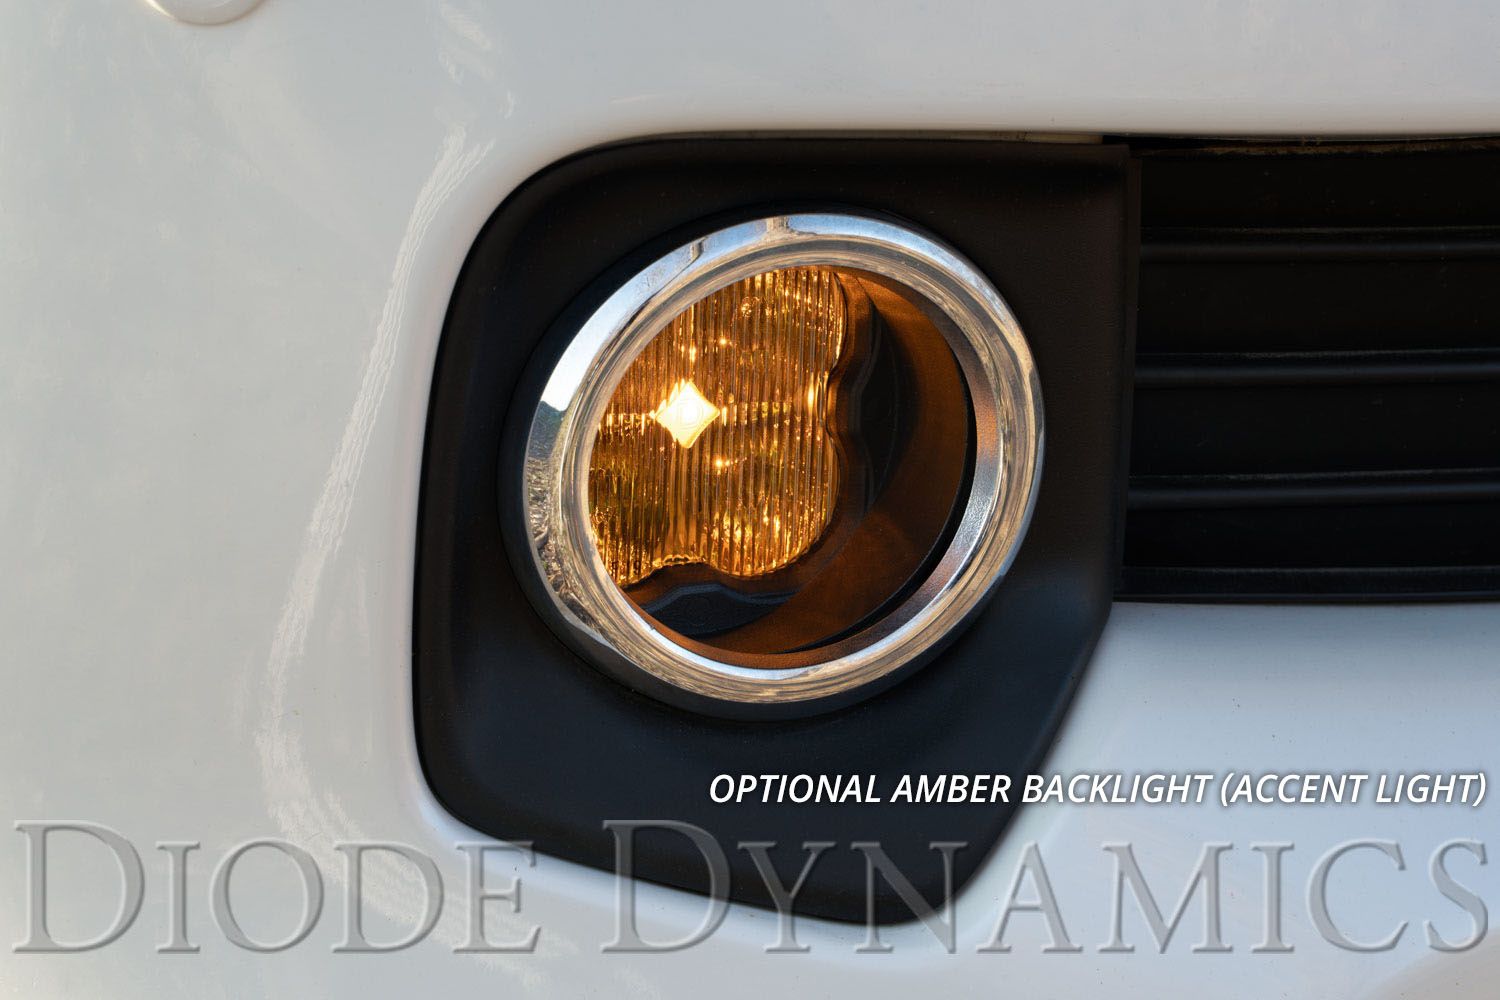 SS3 LED Fog Light Kit For 2011-2013 Lexus CT200h